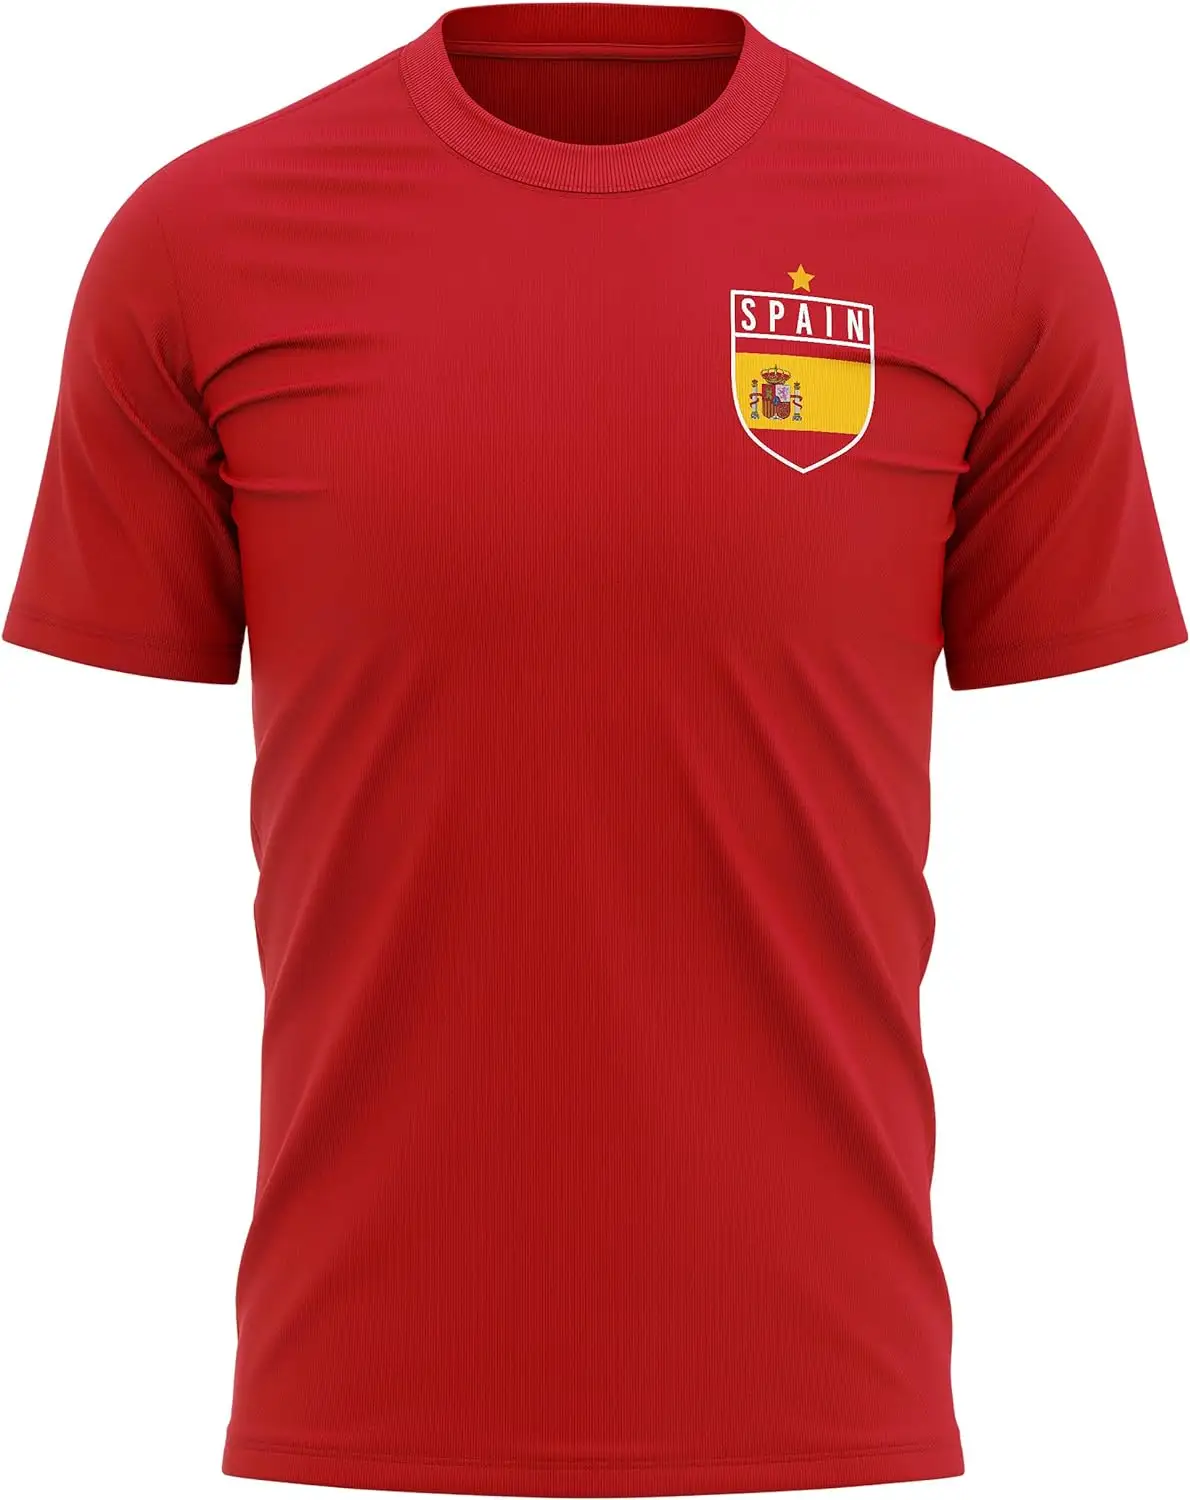 Camiseta de fútbol de España personalizada al por mayor, camiseta con insignia de la bandera de España para hombre, camiseta de fútbol europea, torneo español, camiseta de fútbol